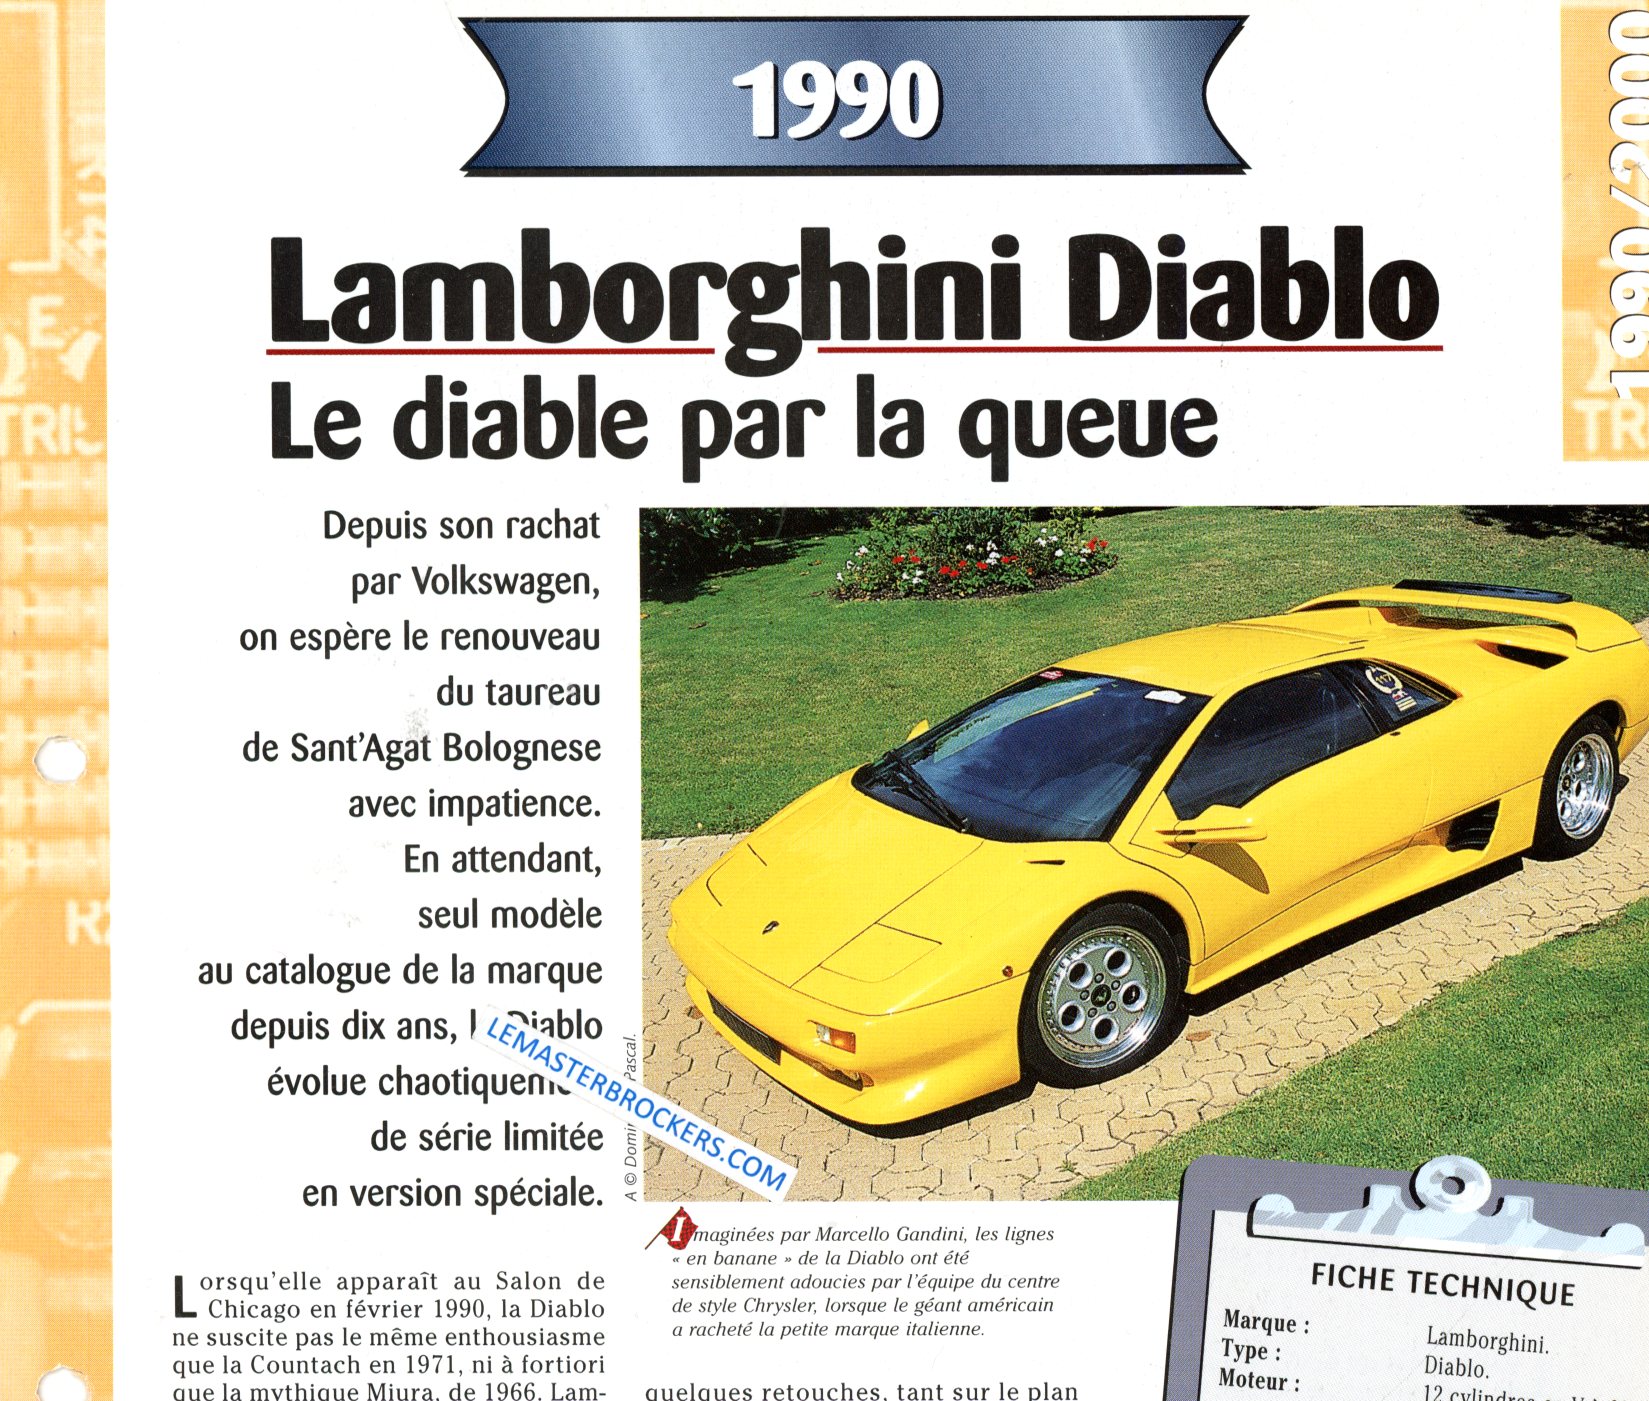 LAMBORGHINI DIABLO 1990 FICHE TECHNIQUE